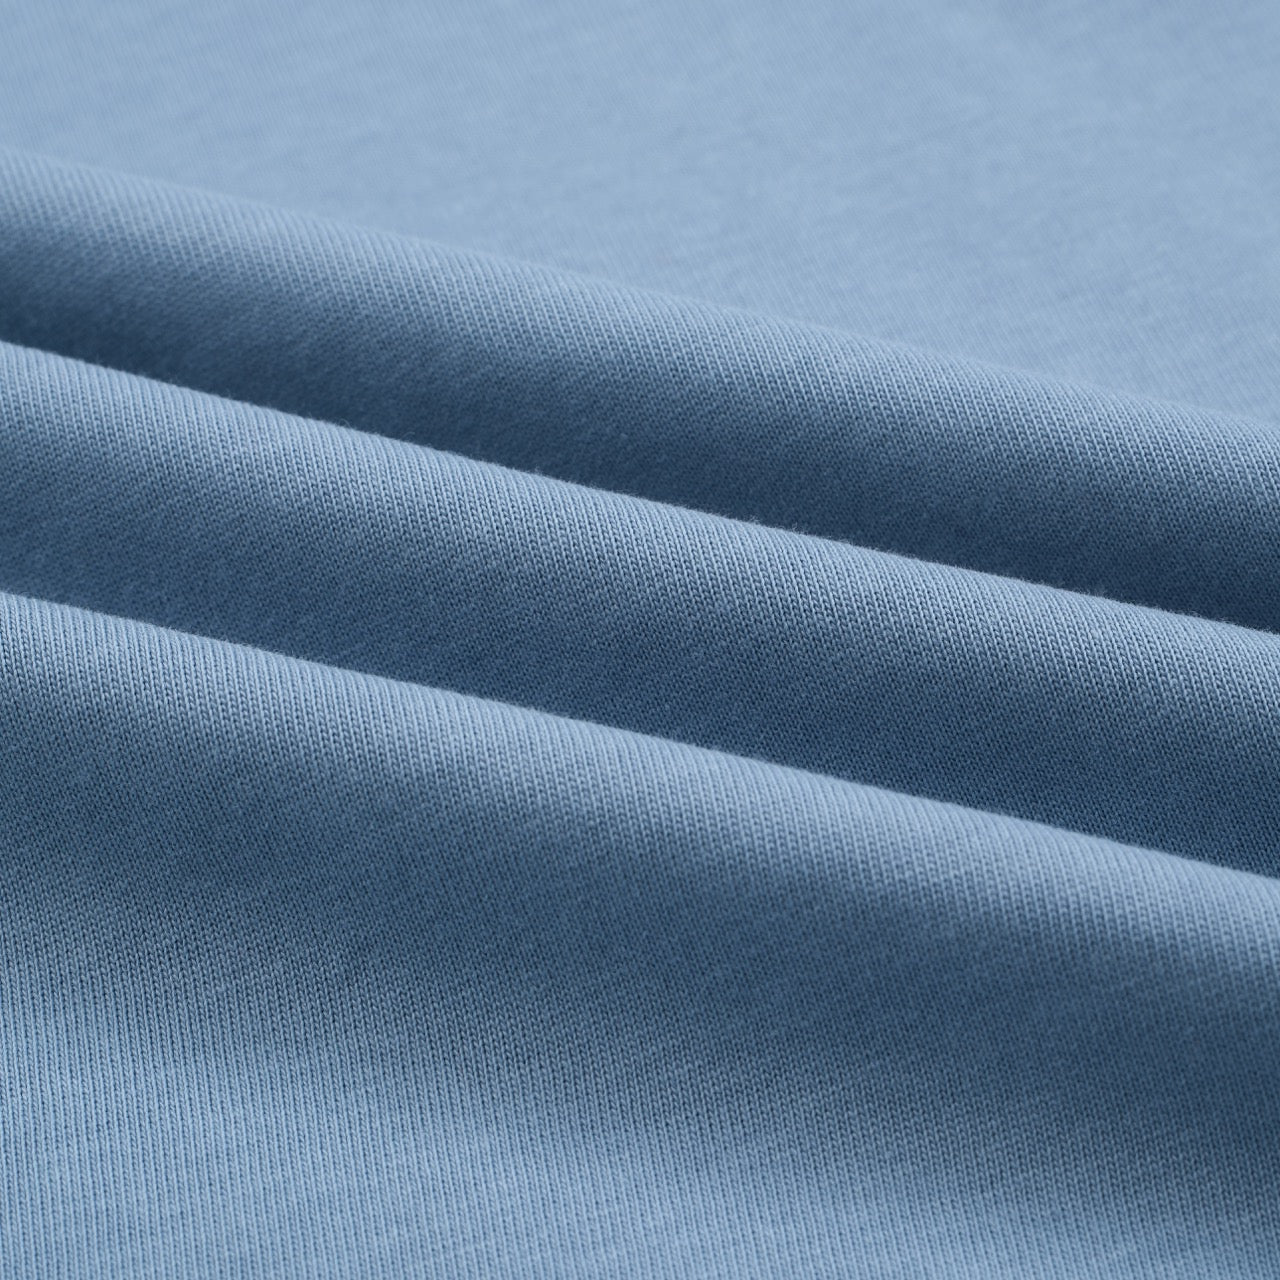 Men's Blue Style Ringer Cotton T-Shirt